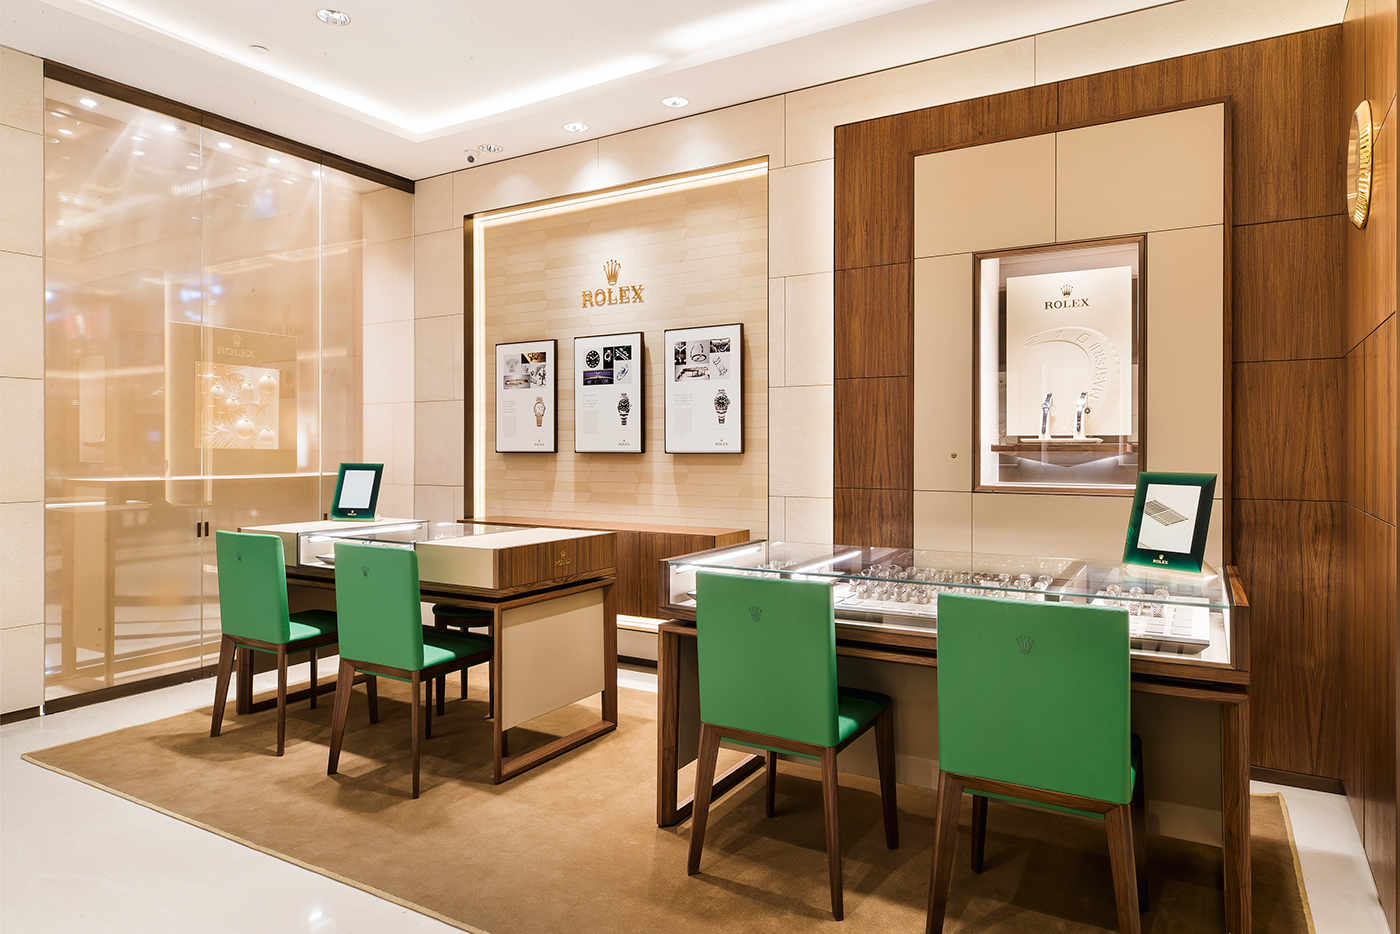 rolex watch store Watch Showroom luxury Premium Store Delhi interior design  architecture architectural photography